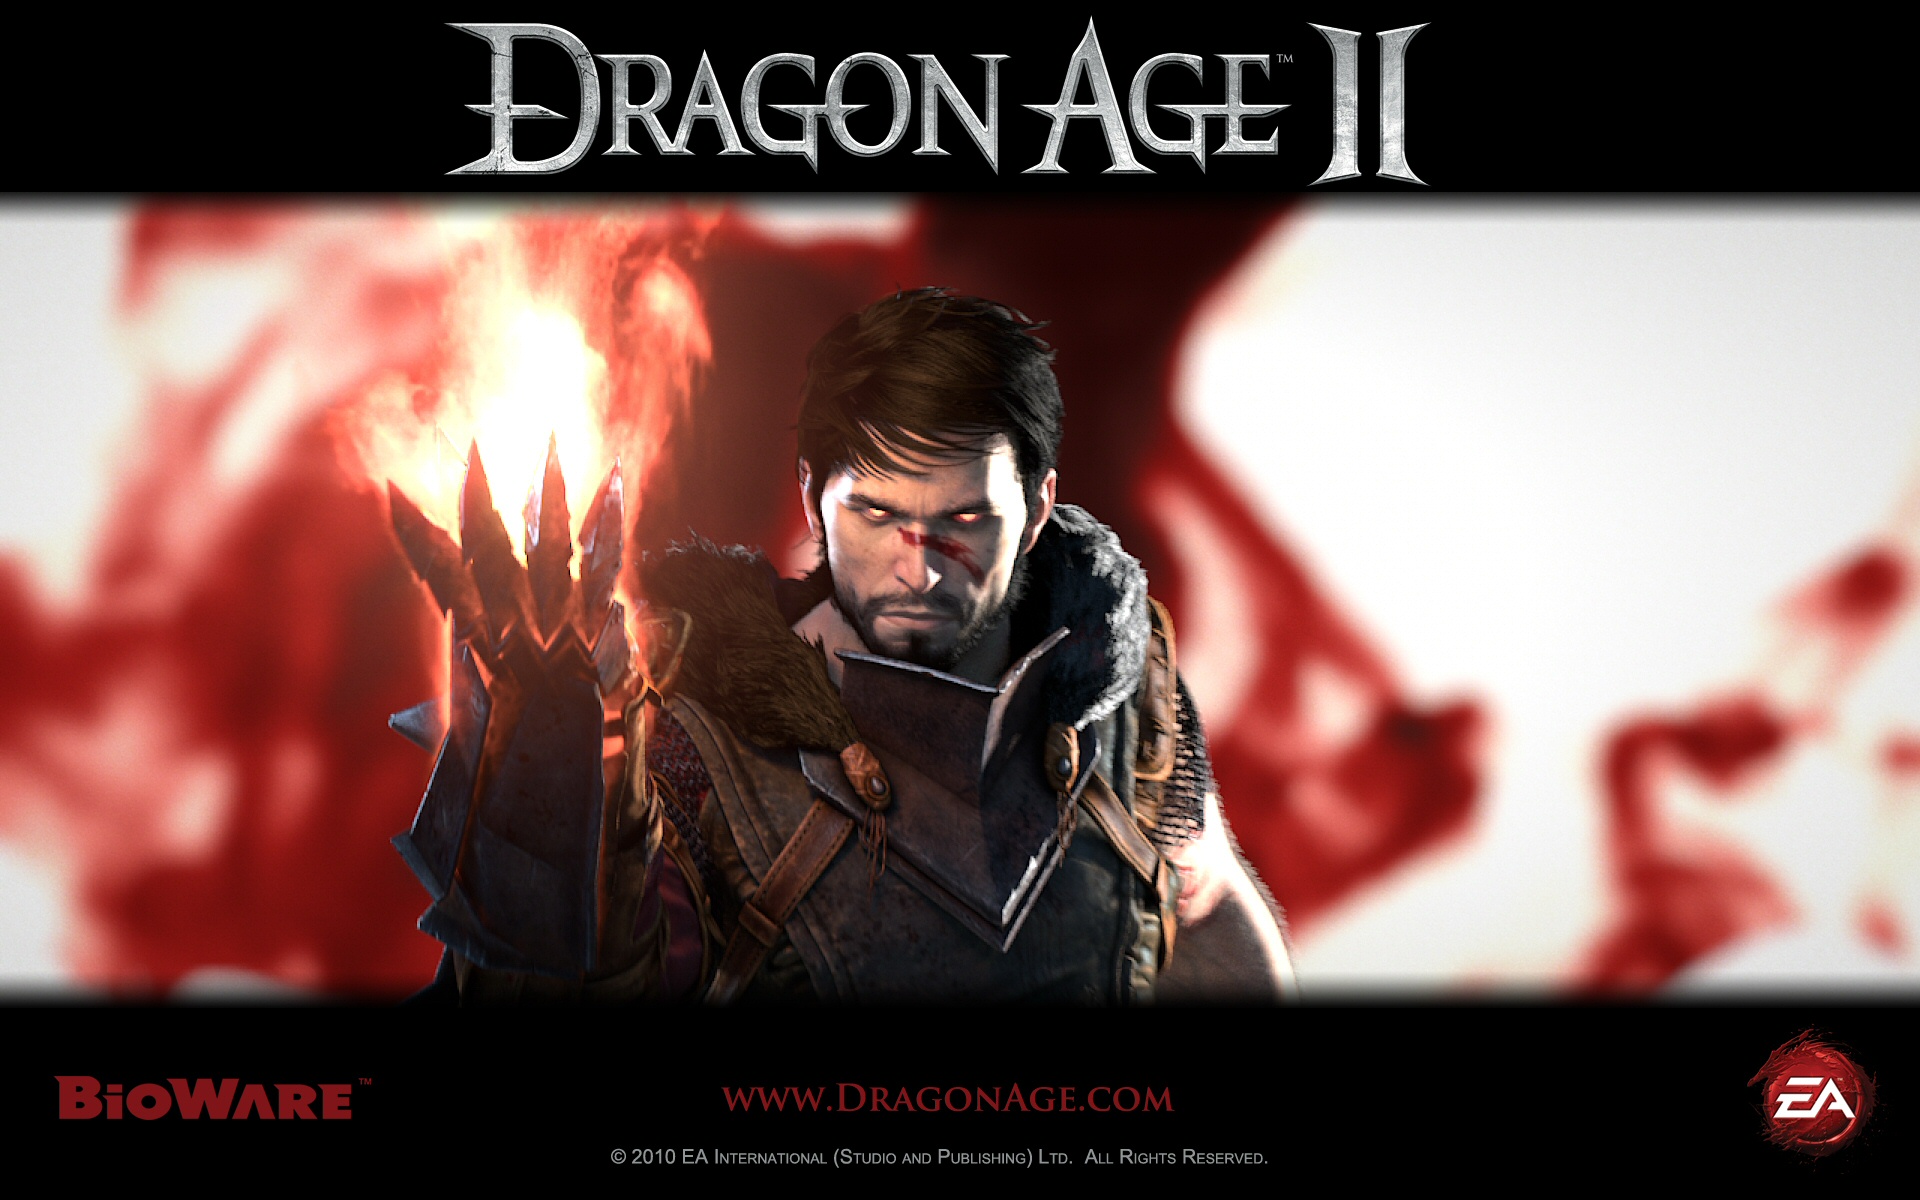 [48+] Dragon Age 2 Wallpapers 1080p | WallpaperSafari